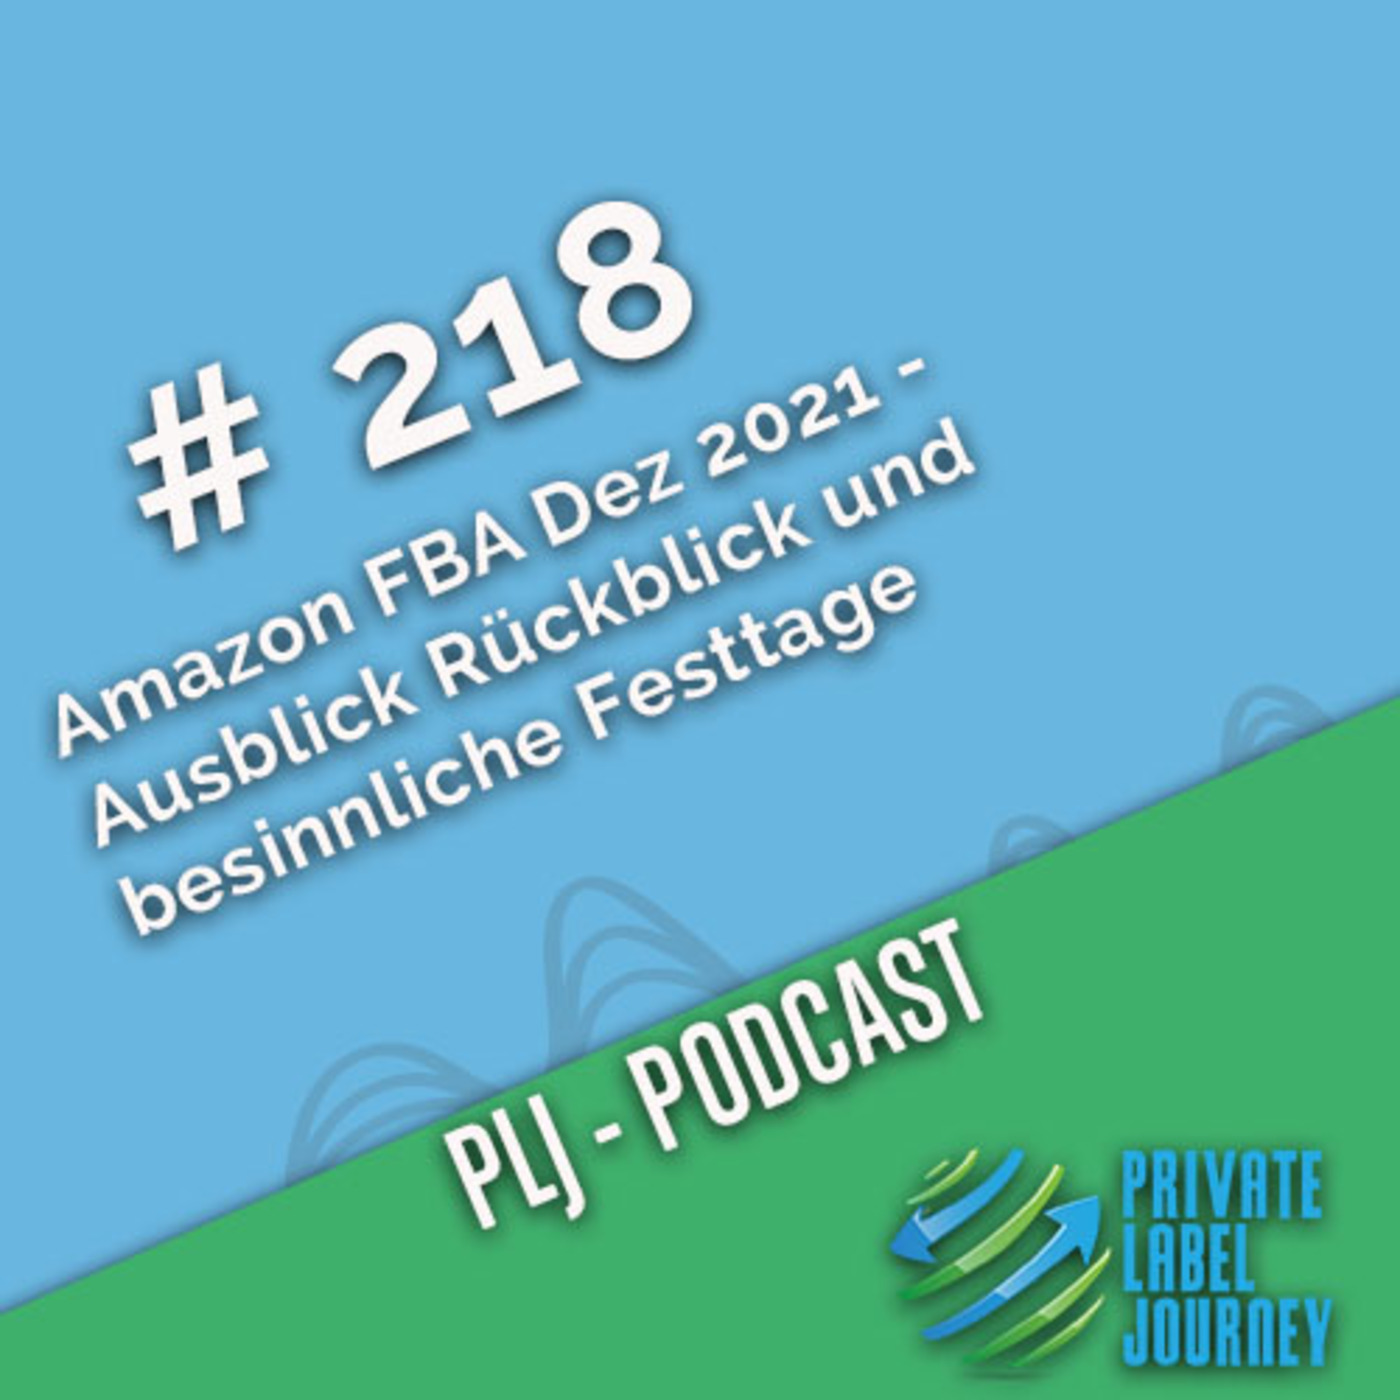 Episode 218: Amazon FBA Dez 2021 -  Ausblick Rückblick und besinnliche  Festtage